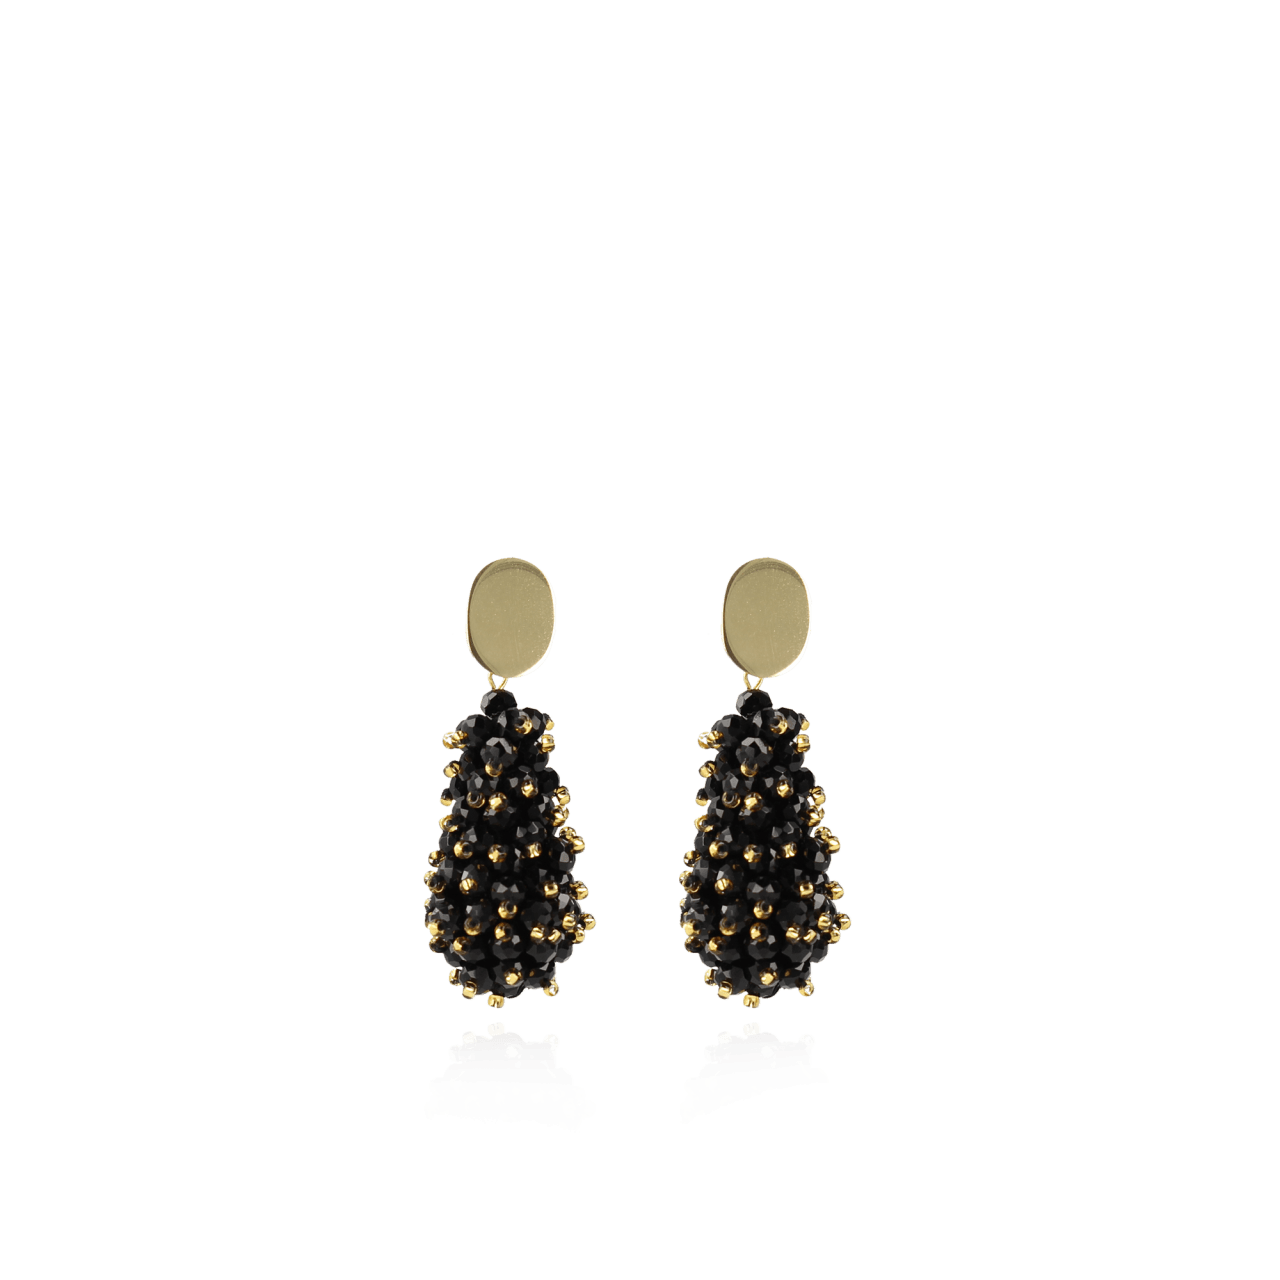 Zwart Gouden oorbellen Glassberry Cone Double Stones